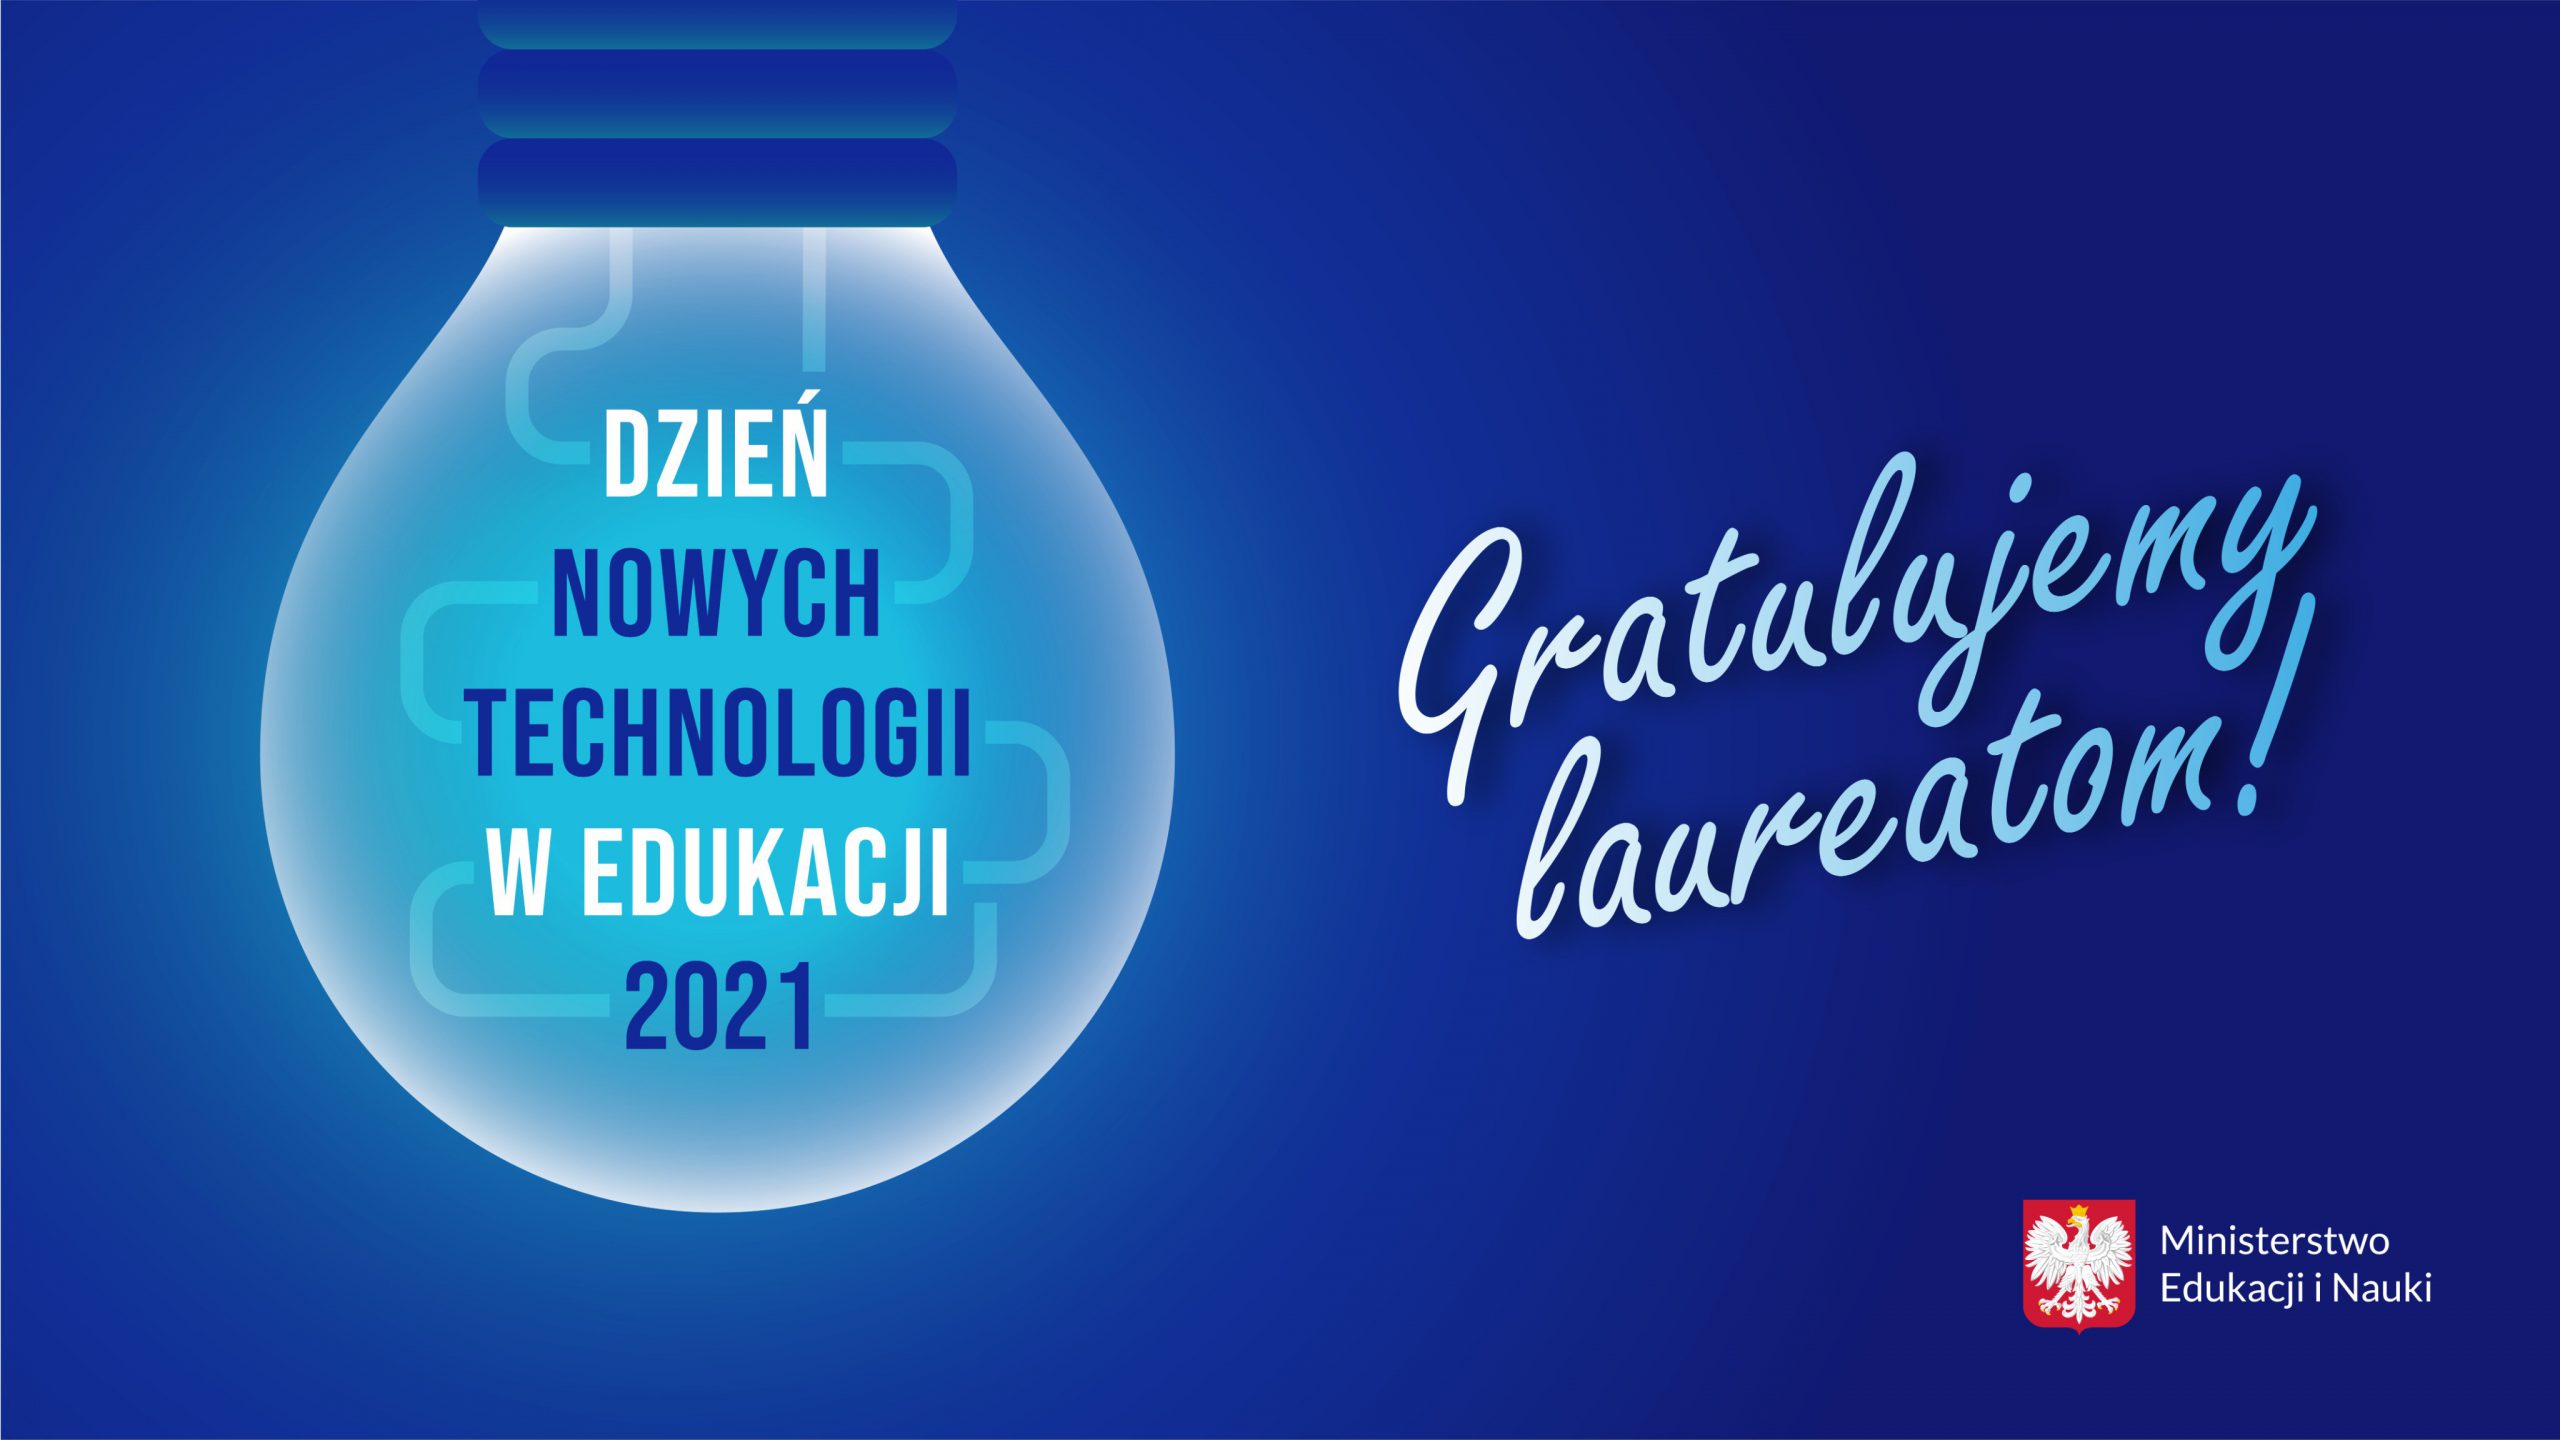 Grafika z tekstem: "Dzień Nowych technologii w Edukacji 2021 – gratulujemy laureatom!"